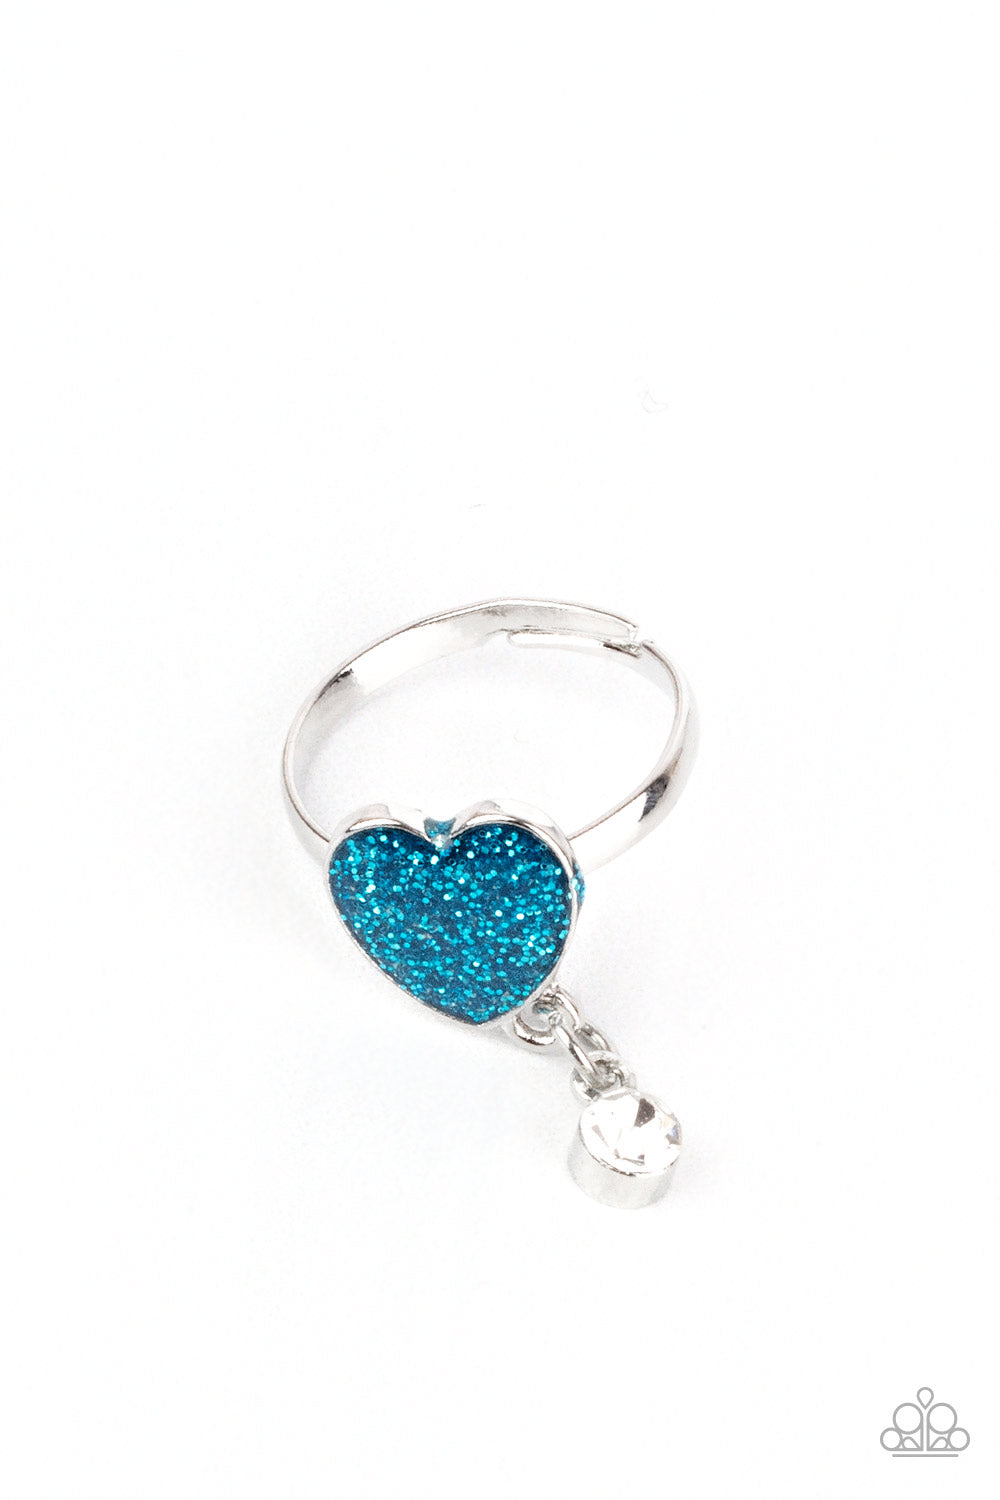 Heart of Glitter Starlet Shimmer Children's Ring Bundle Set - Princess Glam Shop